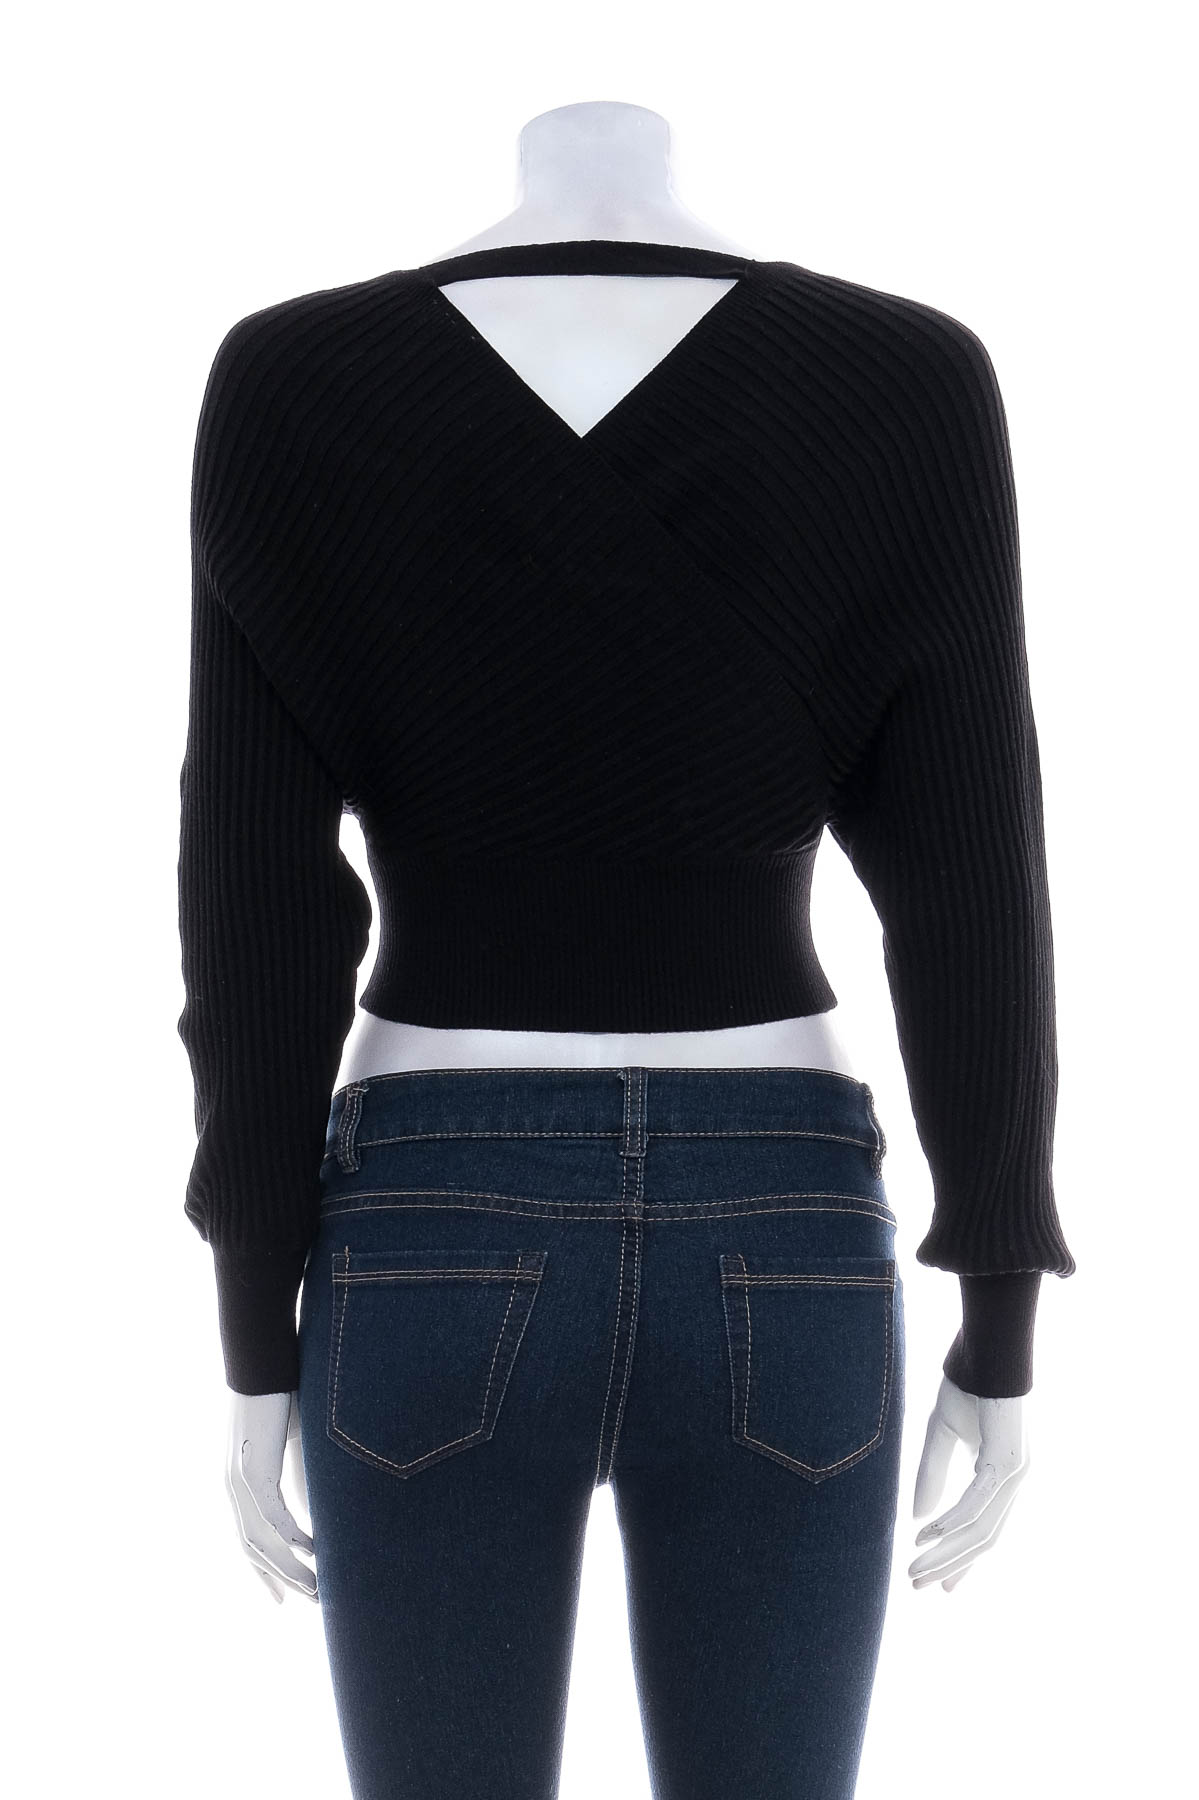 Women's sweater - Windsor - 1